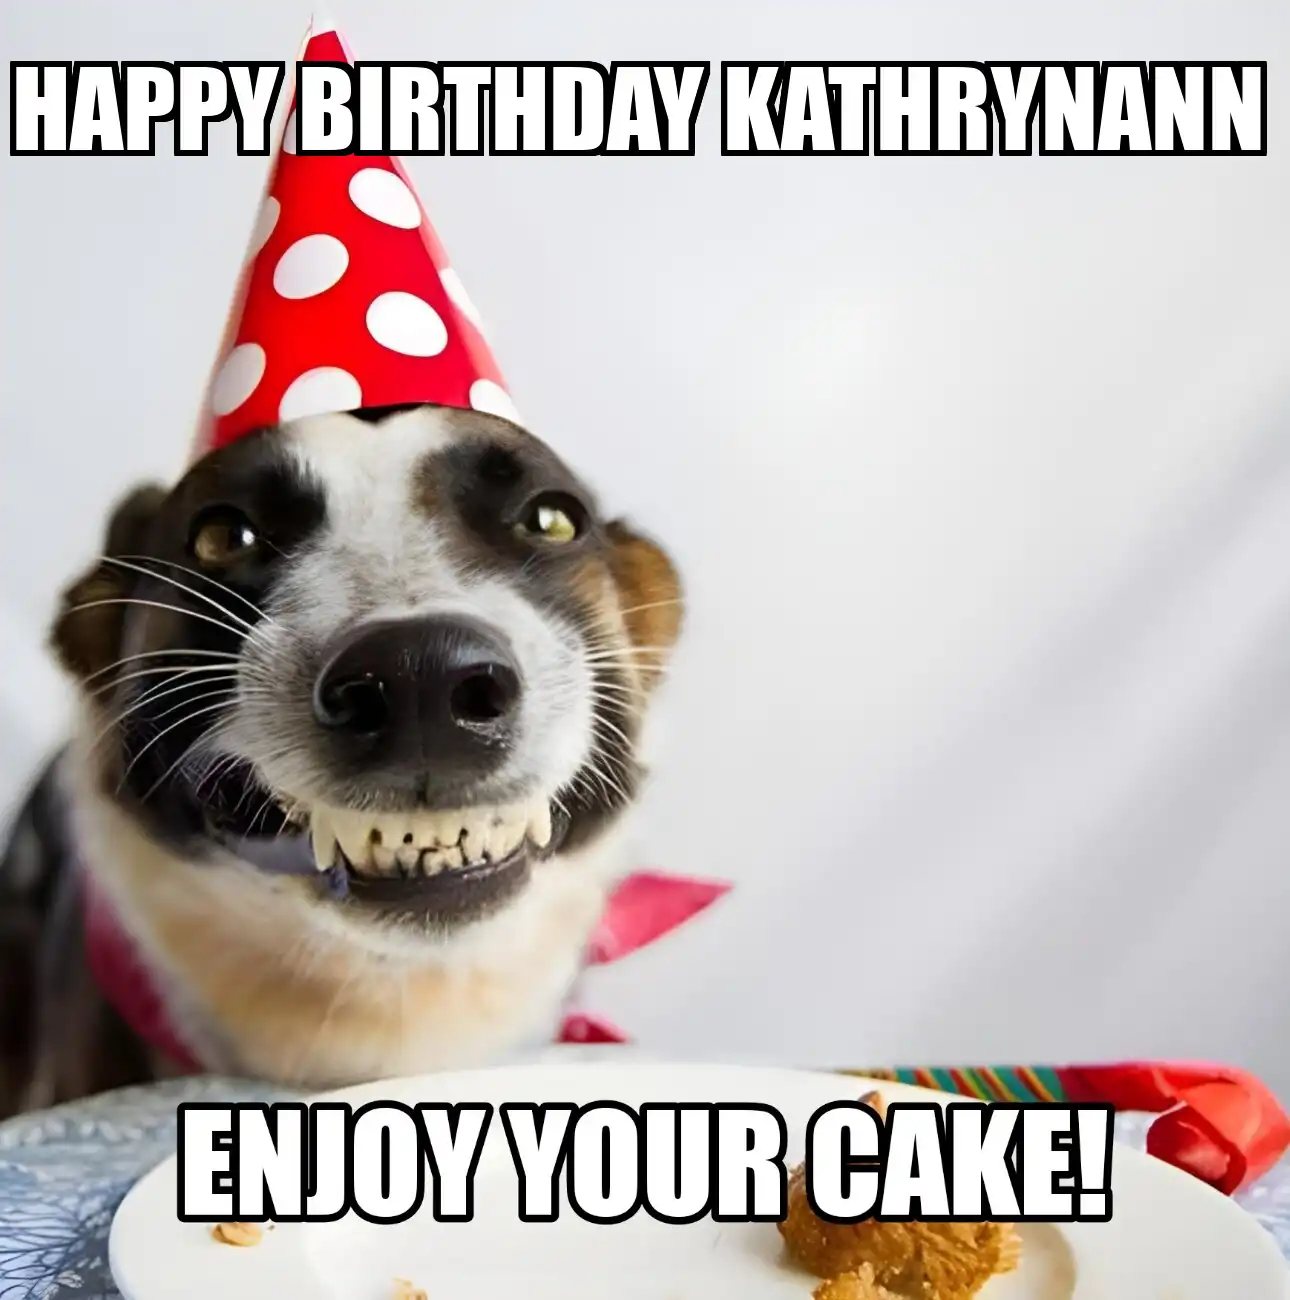 Happy Birthday Kathrynann Enjoy Your Cake Dog Meme